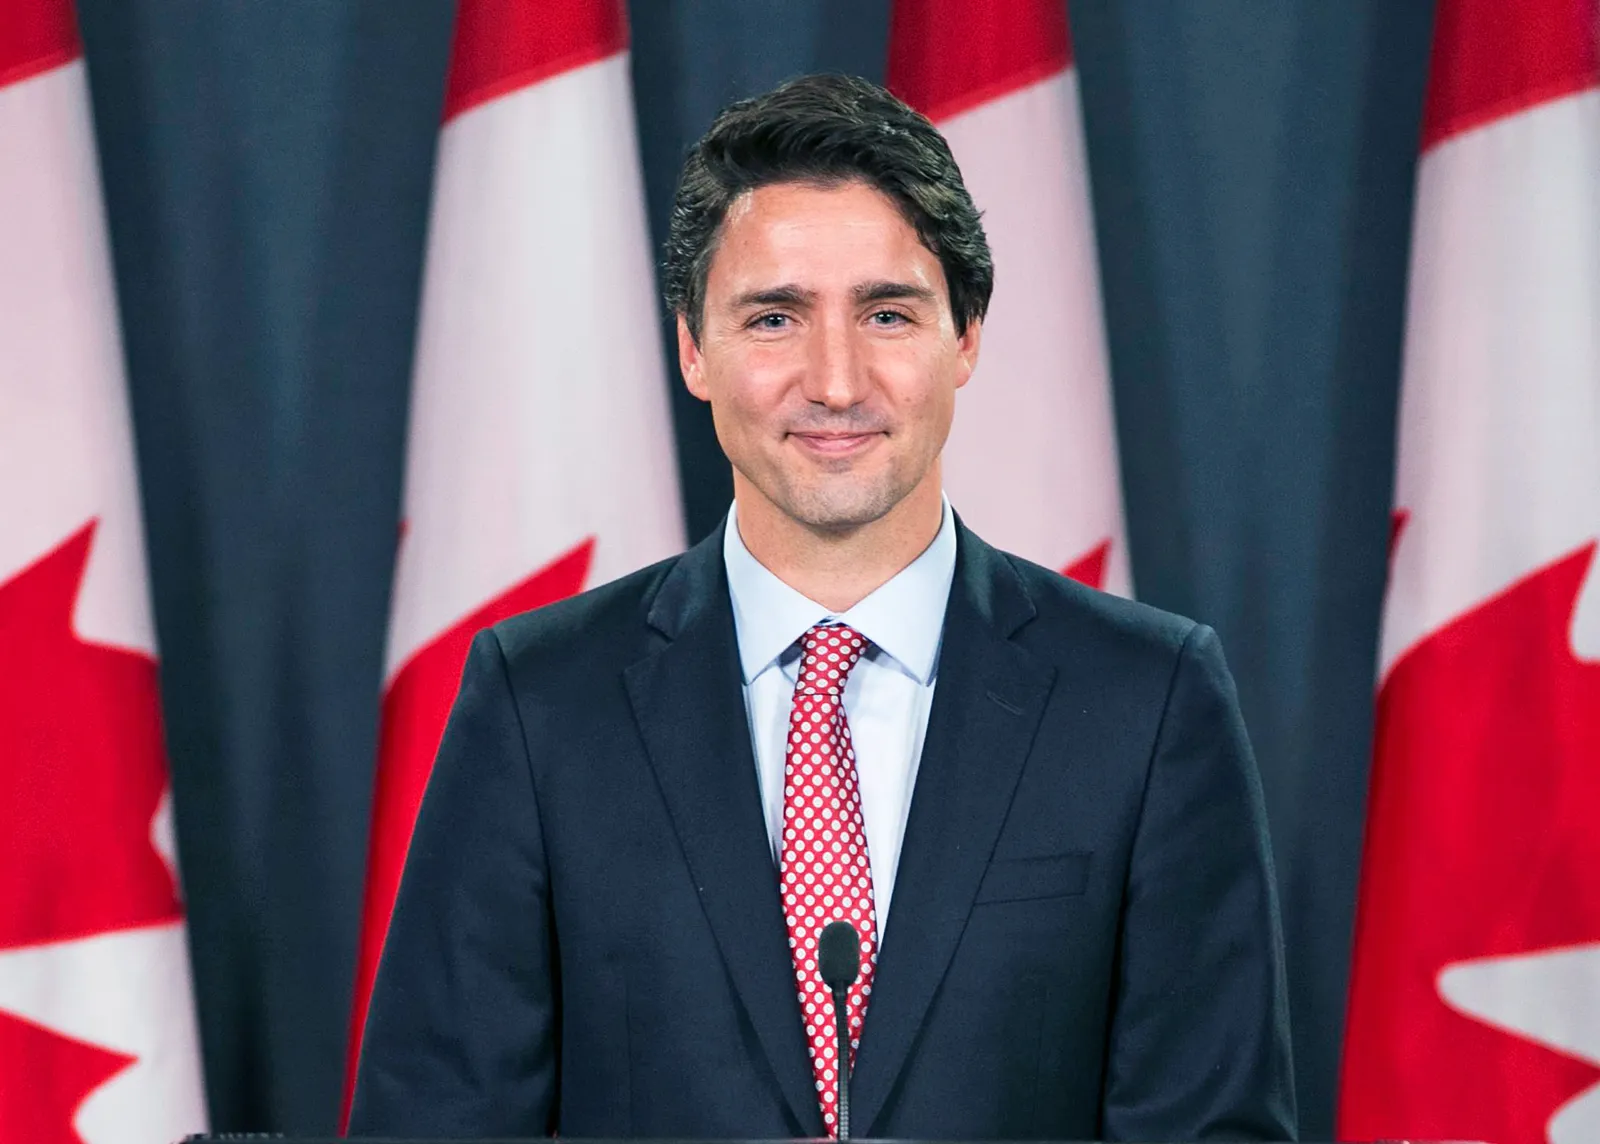 Canada, Trudeau si scaglia contro i crimini di odio che colpiscono la comunità ebraica e musulmana